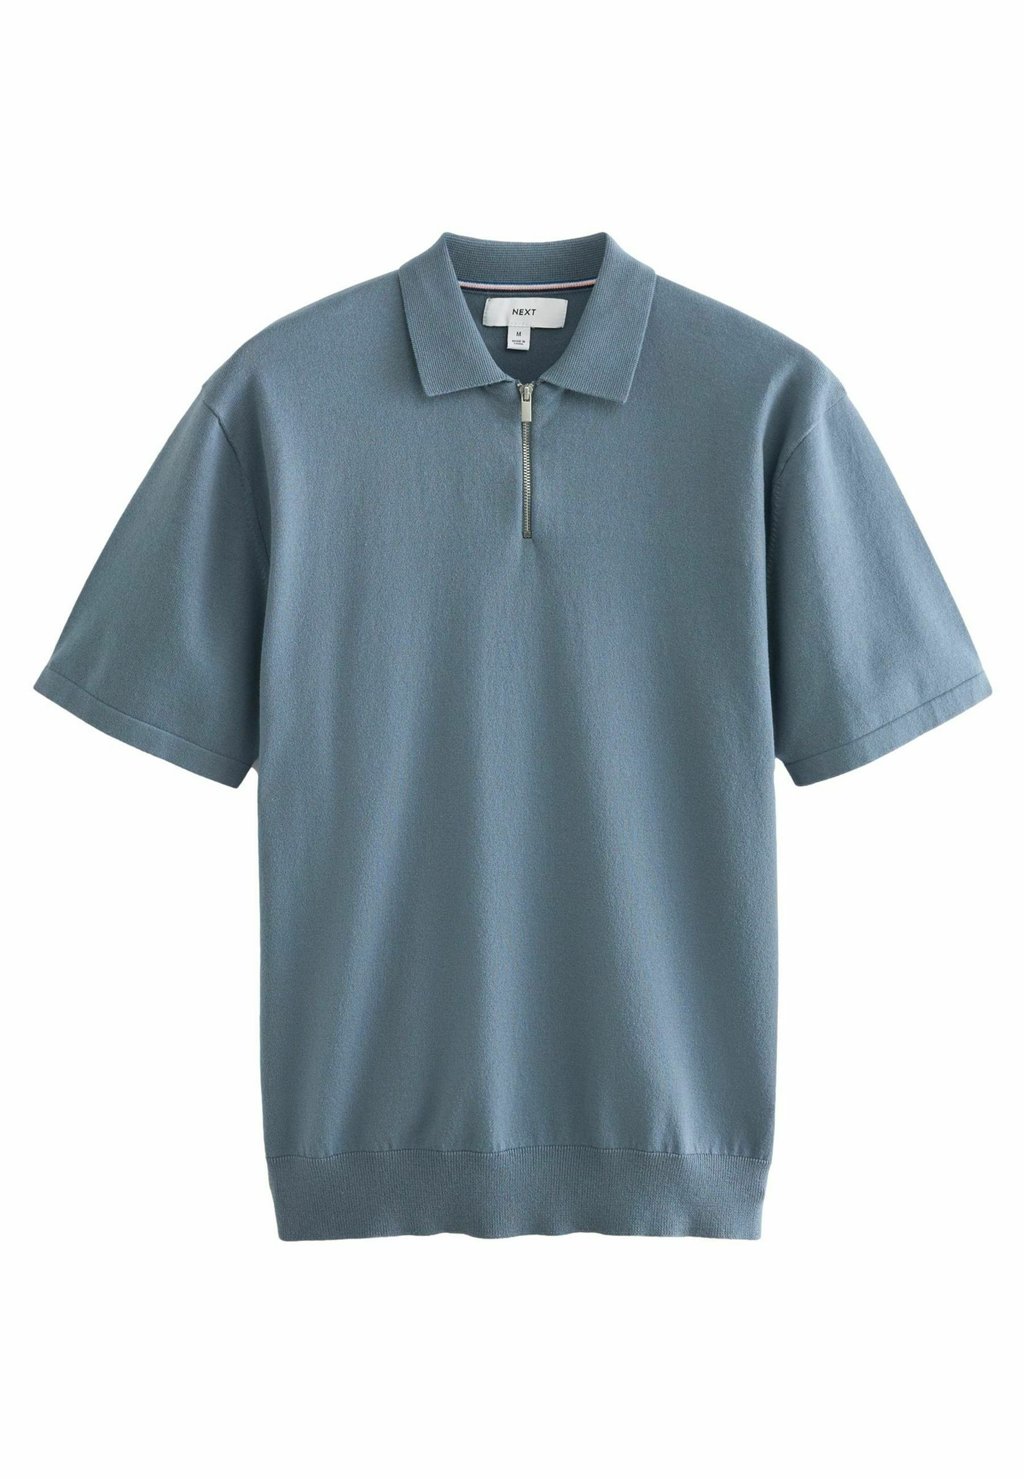 Рубашка-поло REGULAR FIT Next, синий ночная рубашка regular fit next синий